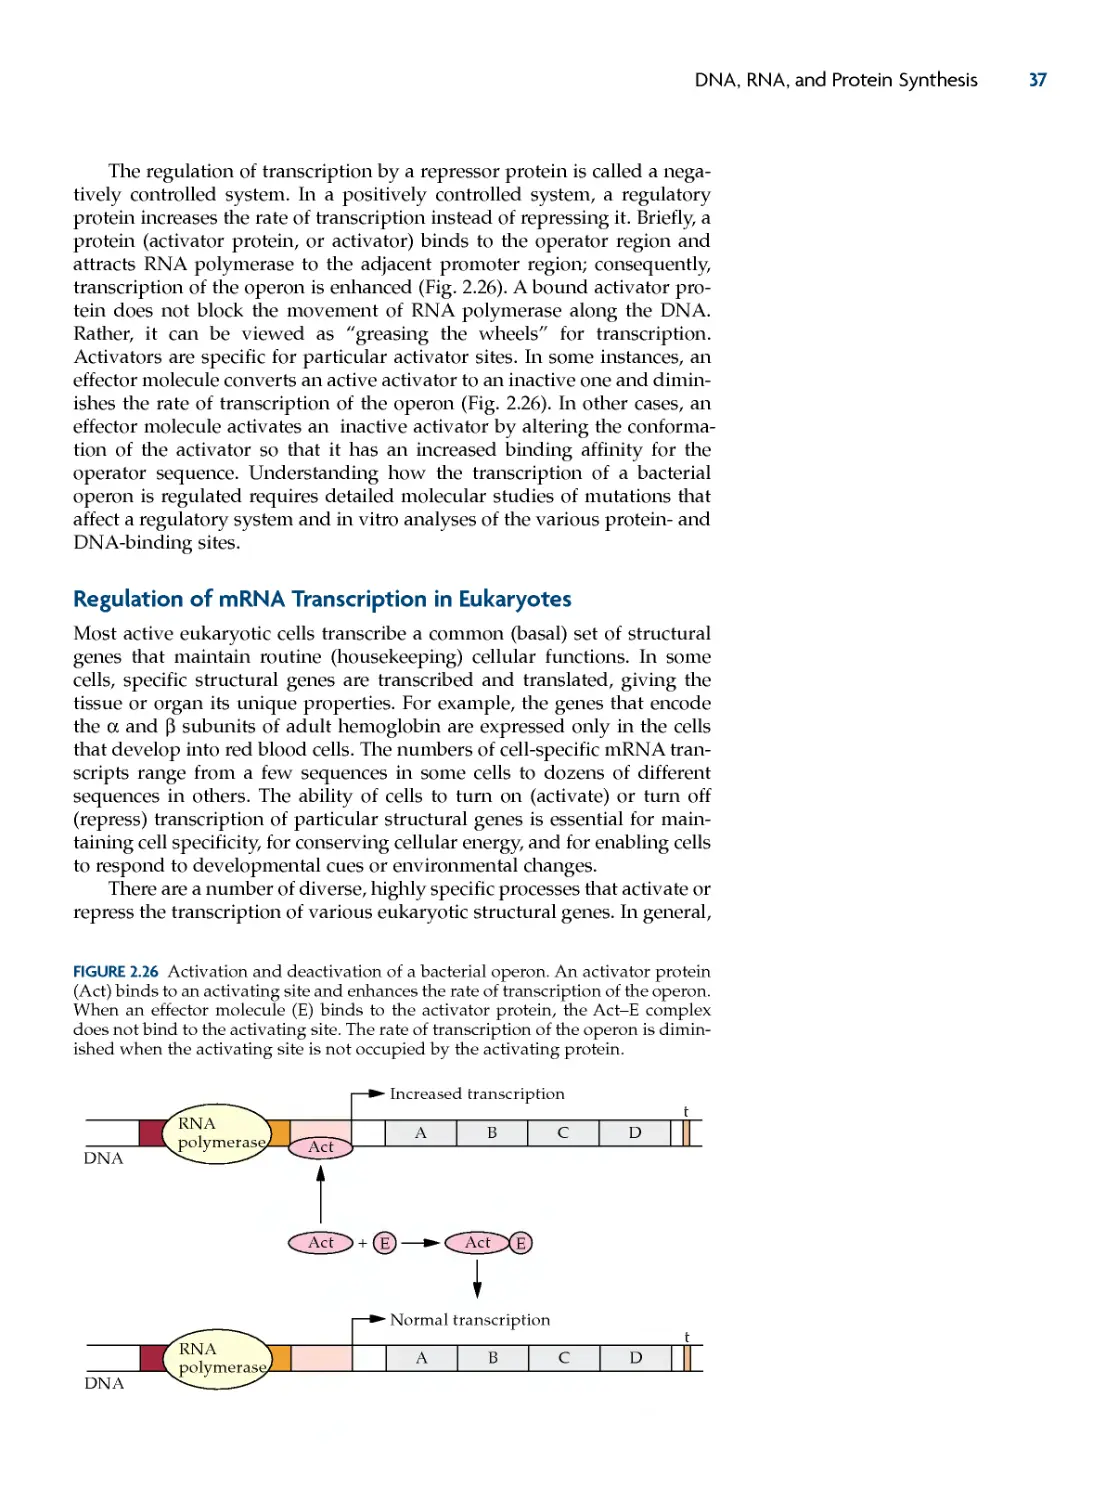 Regulation of mRNA transcription in Eukaryotes